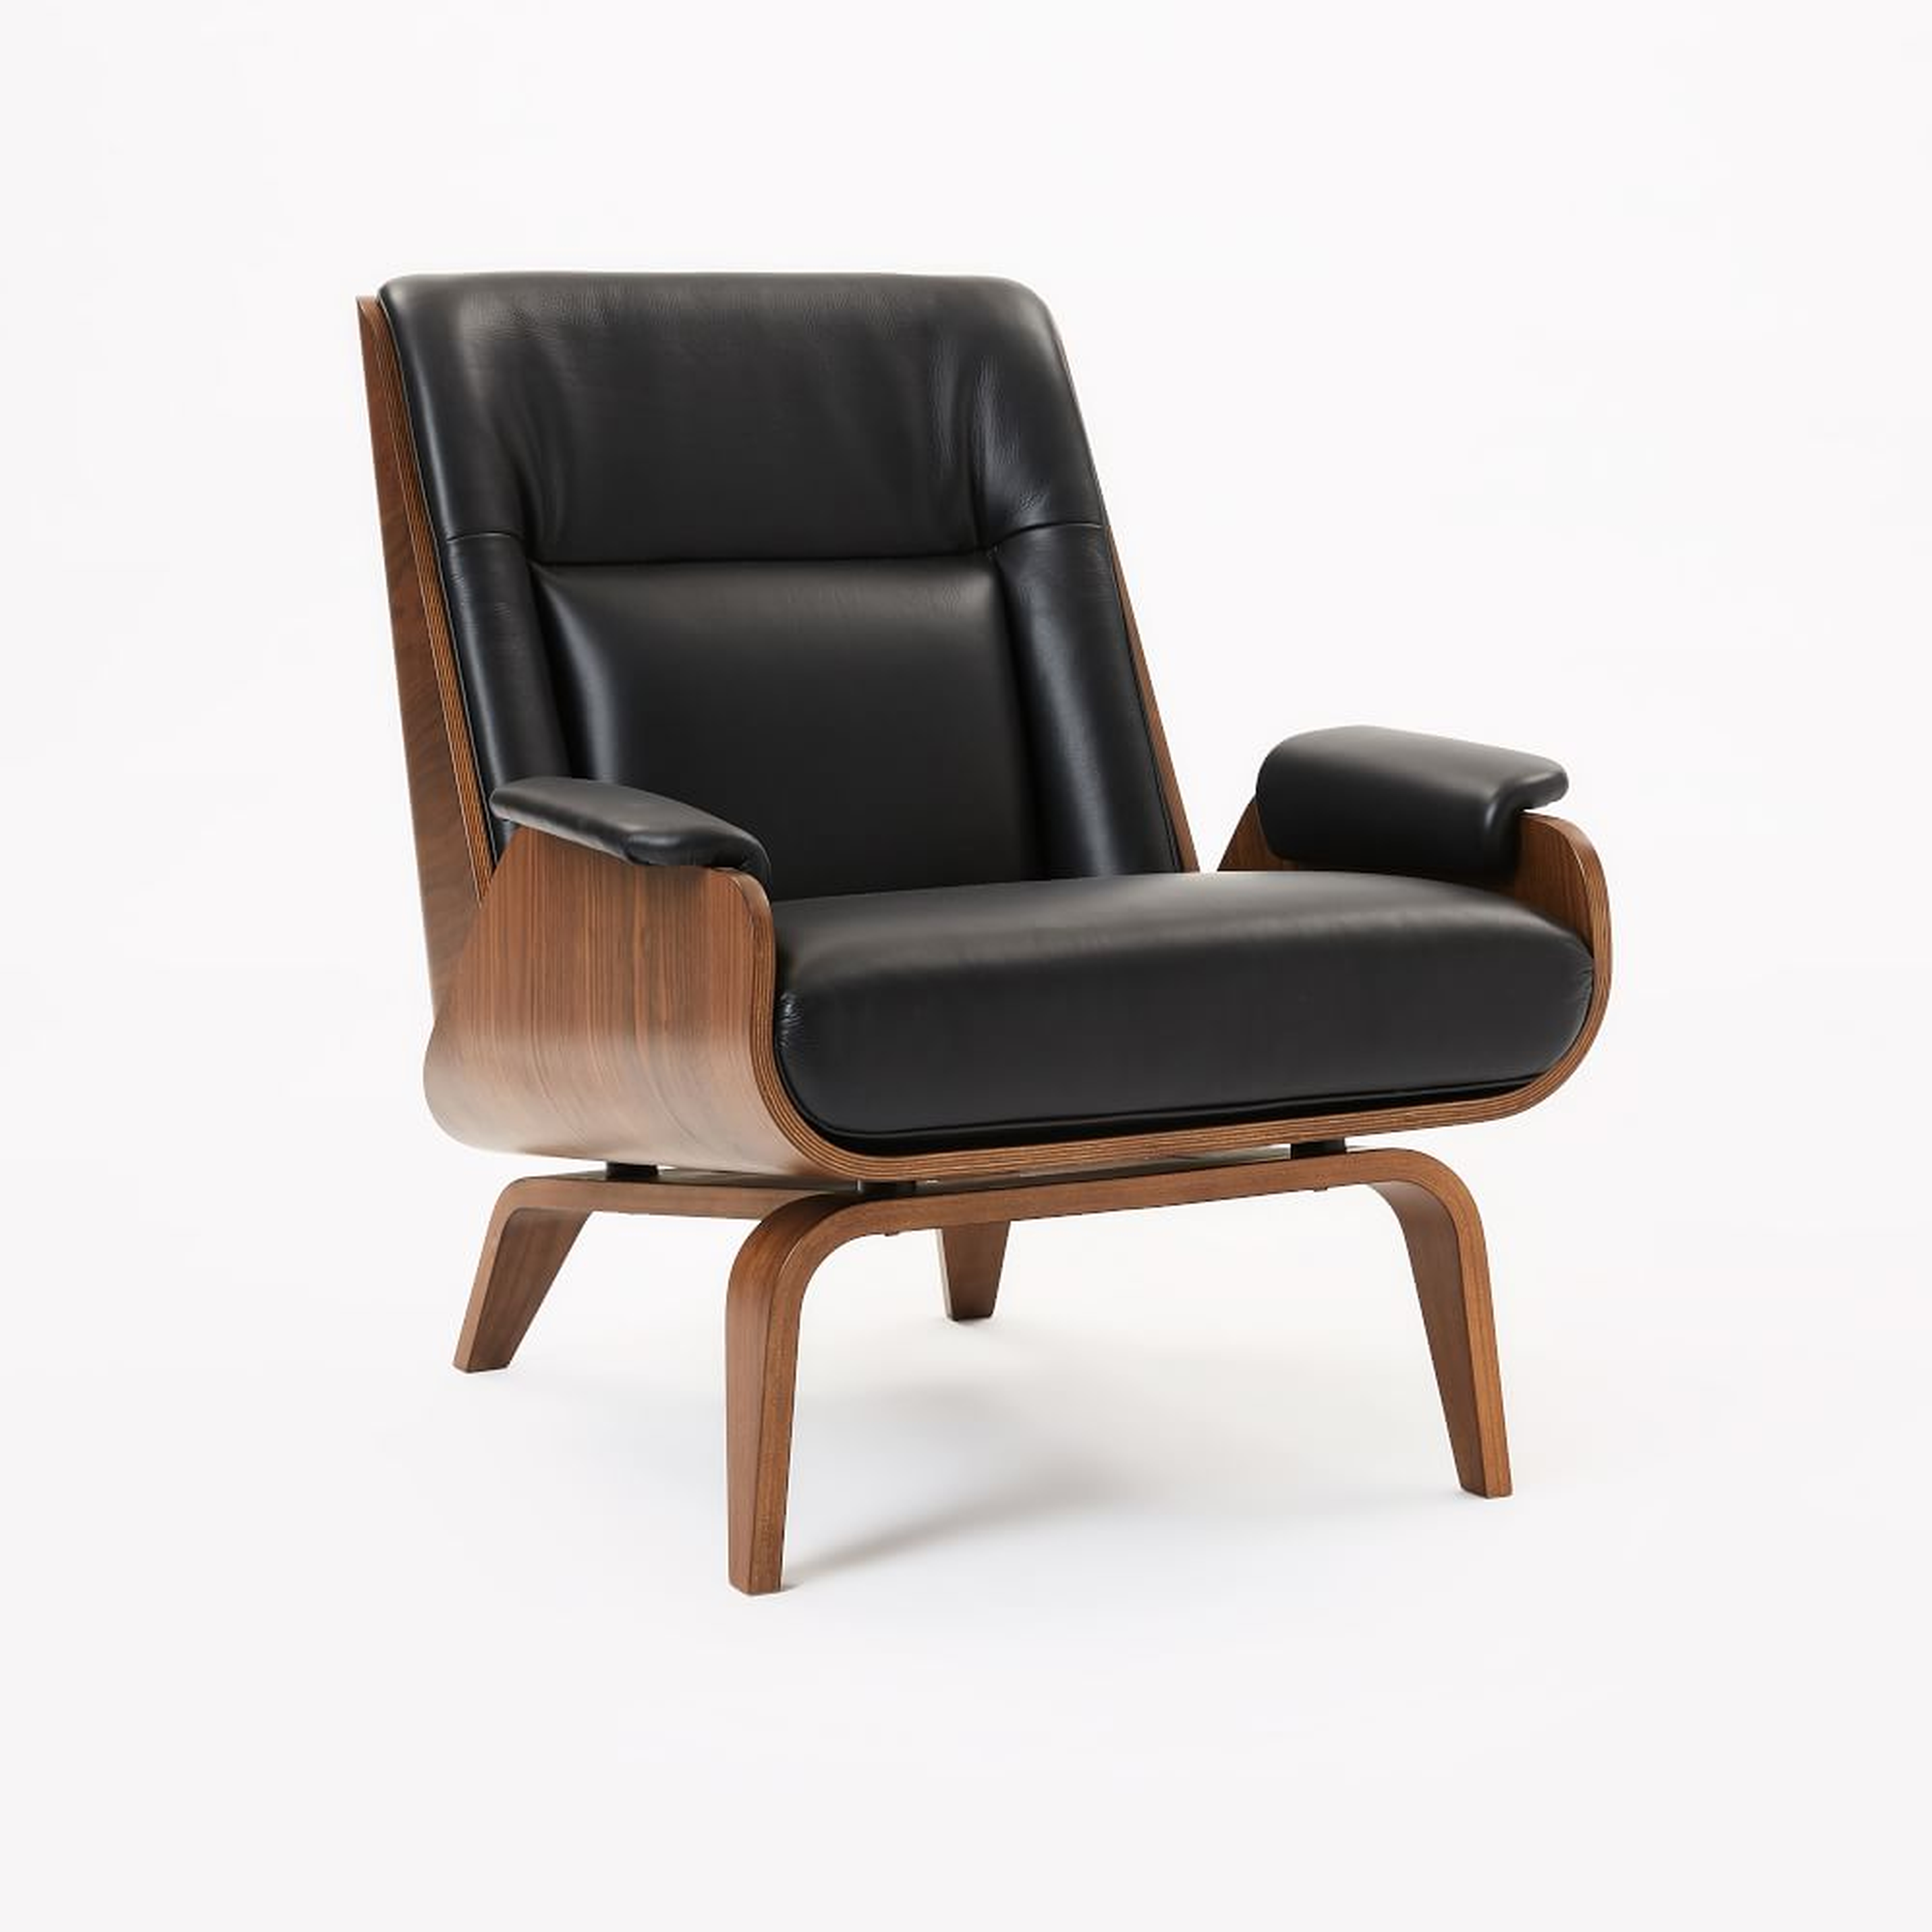 Paulo Bent Lounge Chair, Parc Leather, Black - West Elm